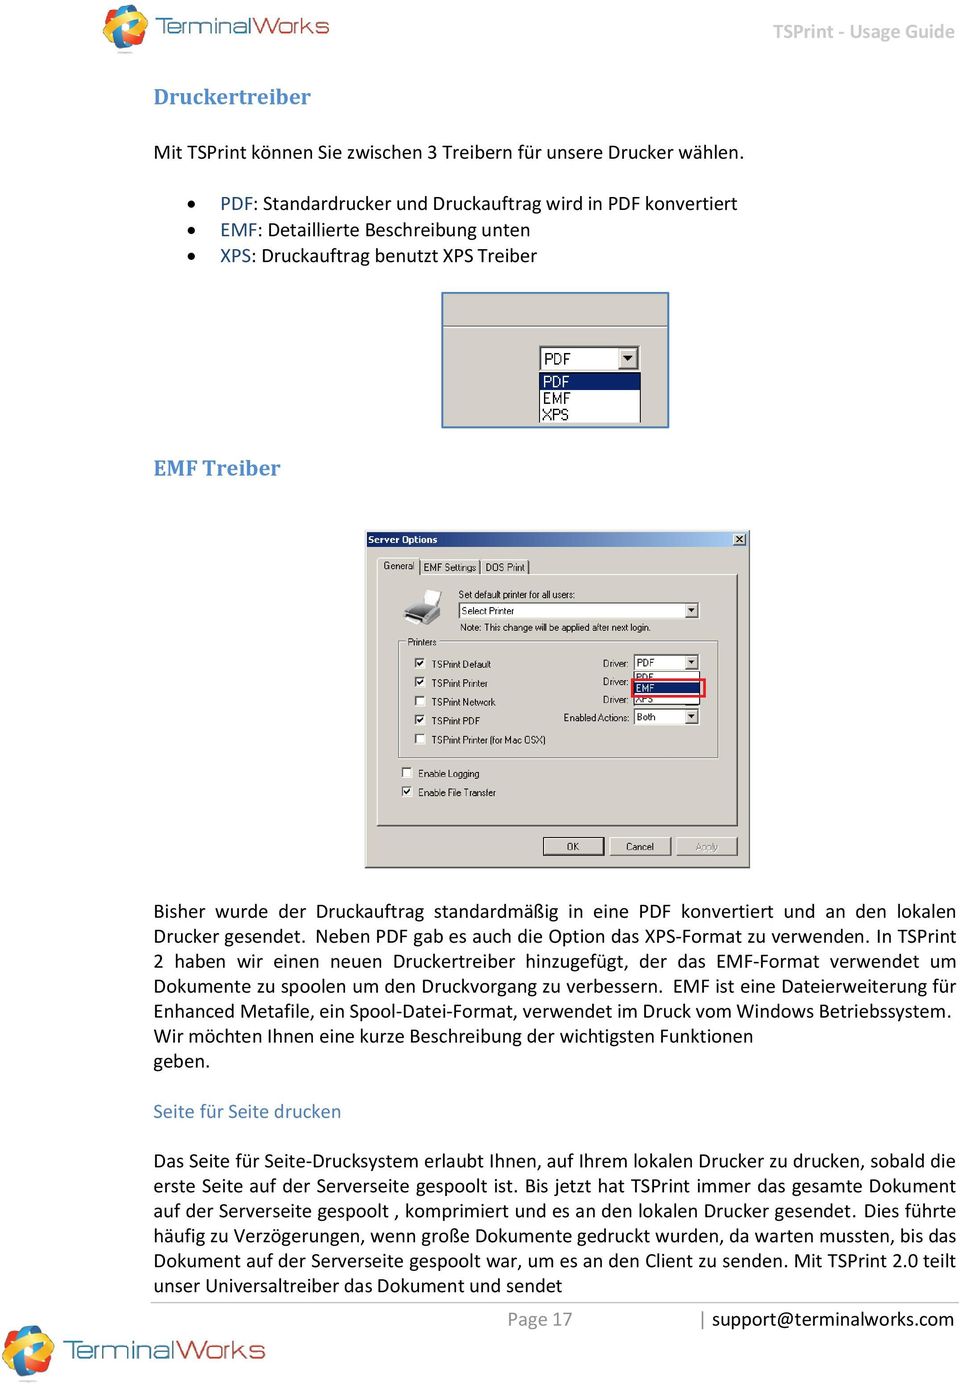 PDF konvertiert und an den lokalen Drucker gesendet. Neben PDF gab es auch die Option das XPS-Format zu verwenden.